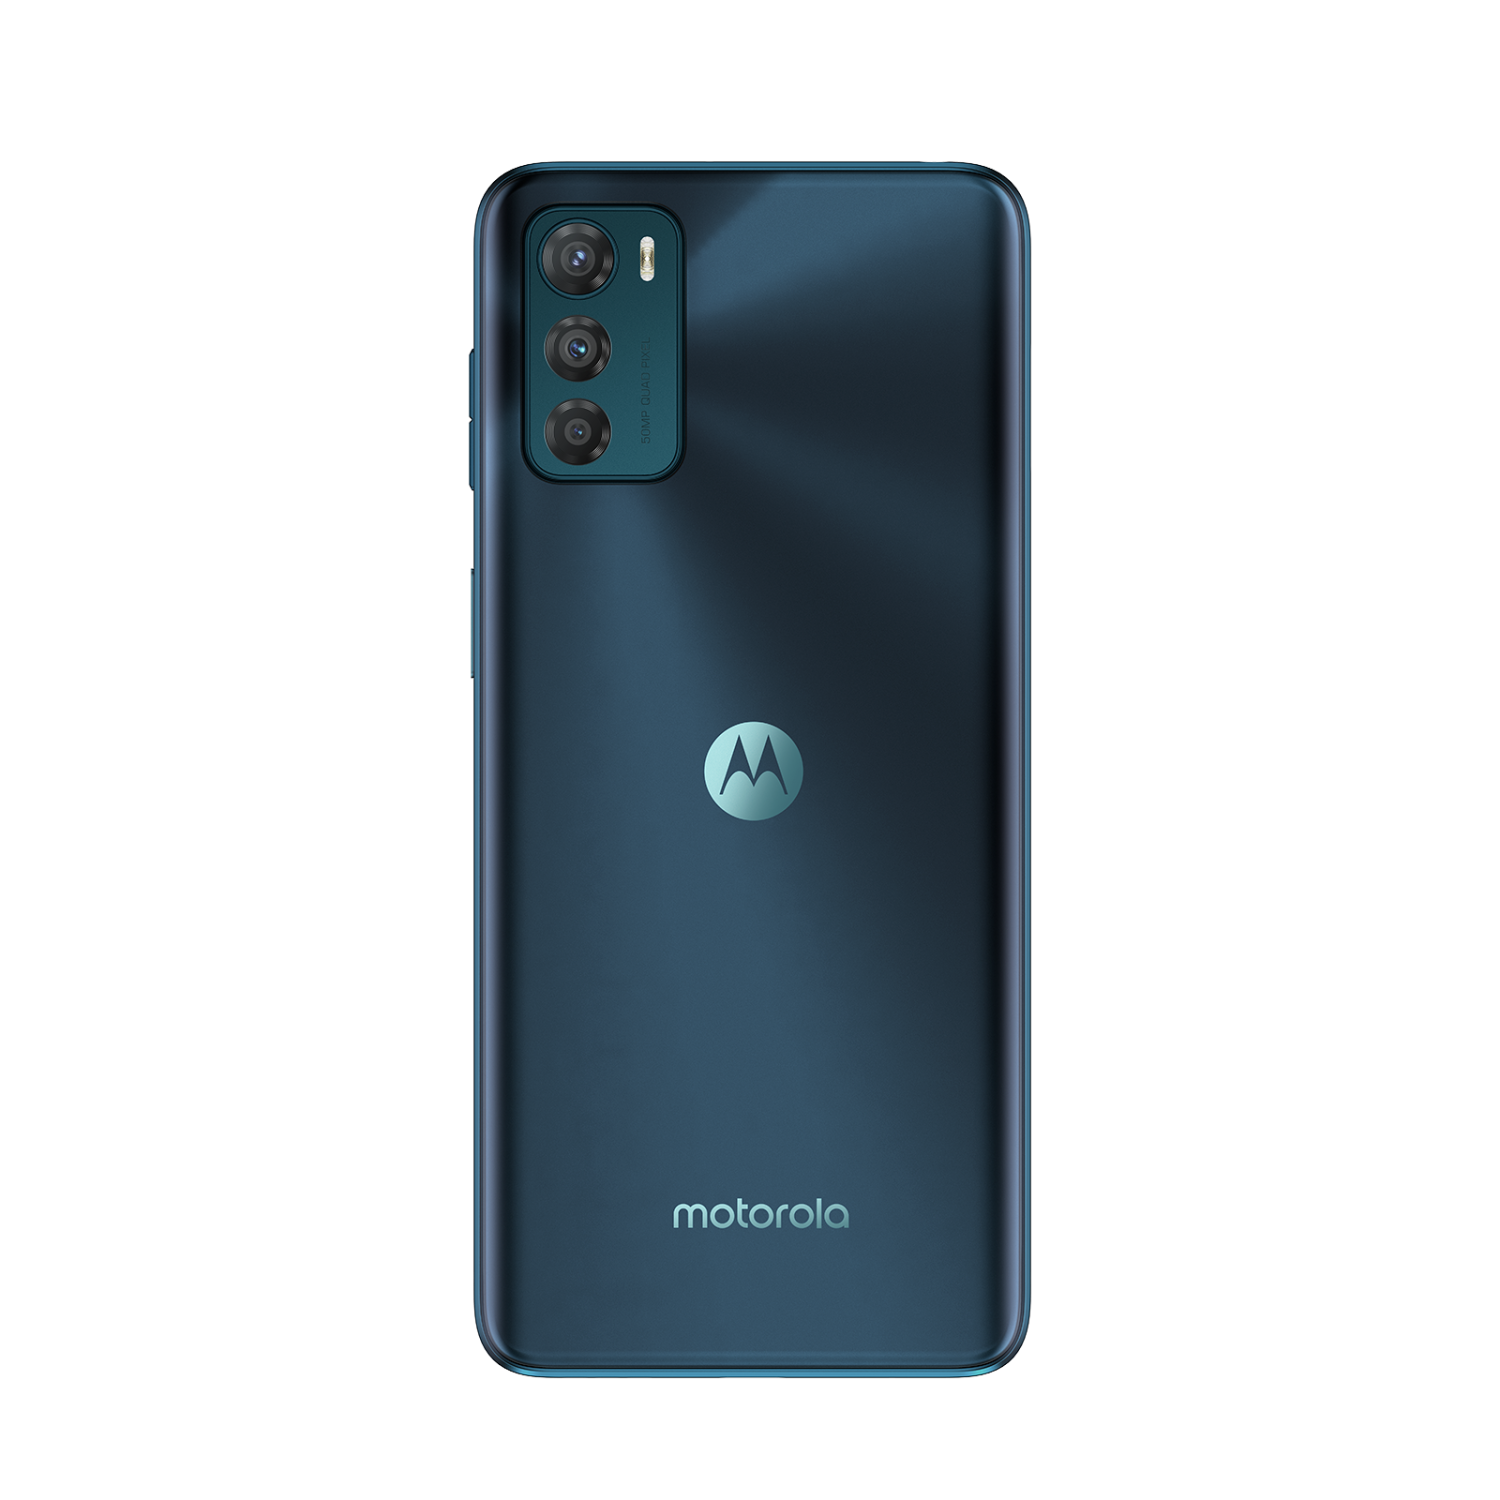 Motorola Moto G42 6GB/128GB Atlantic Green